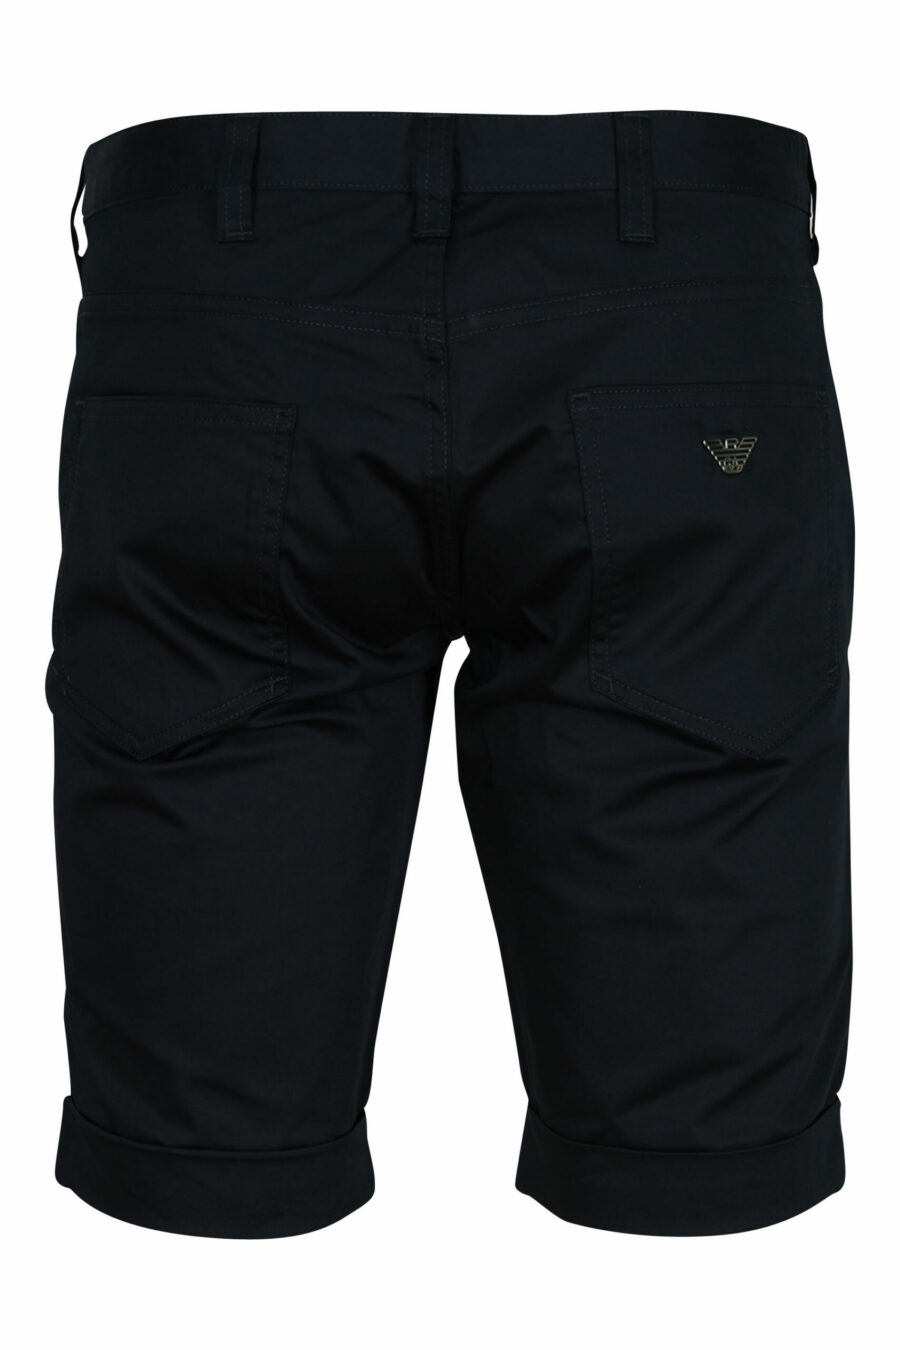 Pantalón corto azul oscuro con minilogo águila - 8057163567200 1 scaled